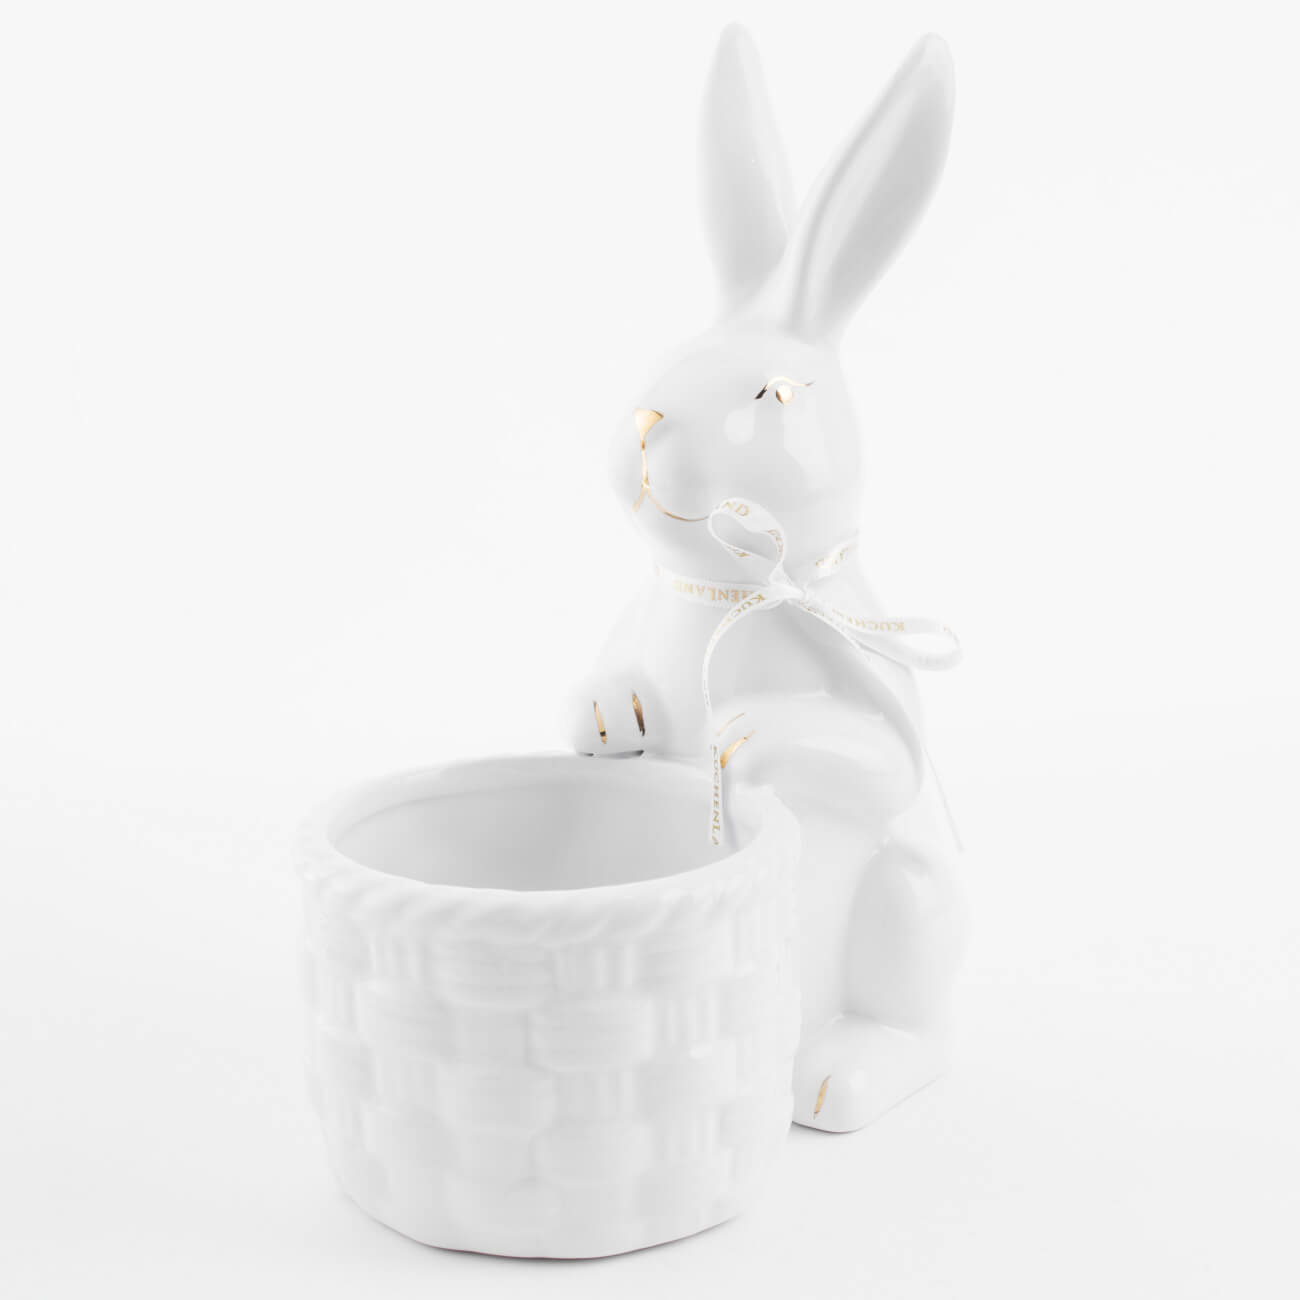 конфетница 12х14 см с ручкой керамика белая кролик на корзине easter gold Конфетница, 18x23 см, керамика, бело-золотистая, Кролик с плетенной корзиной, Easter gold